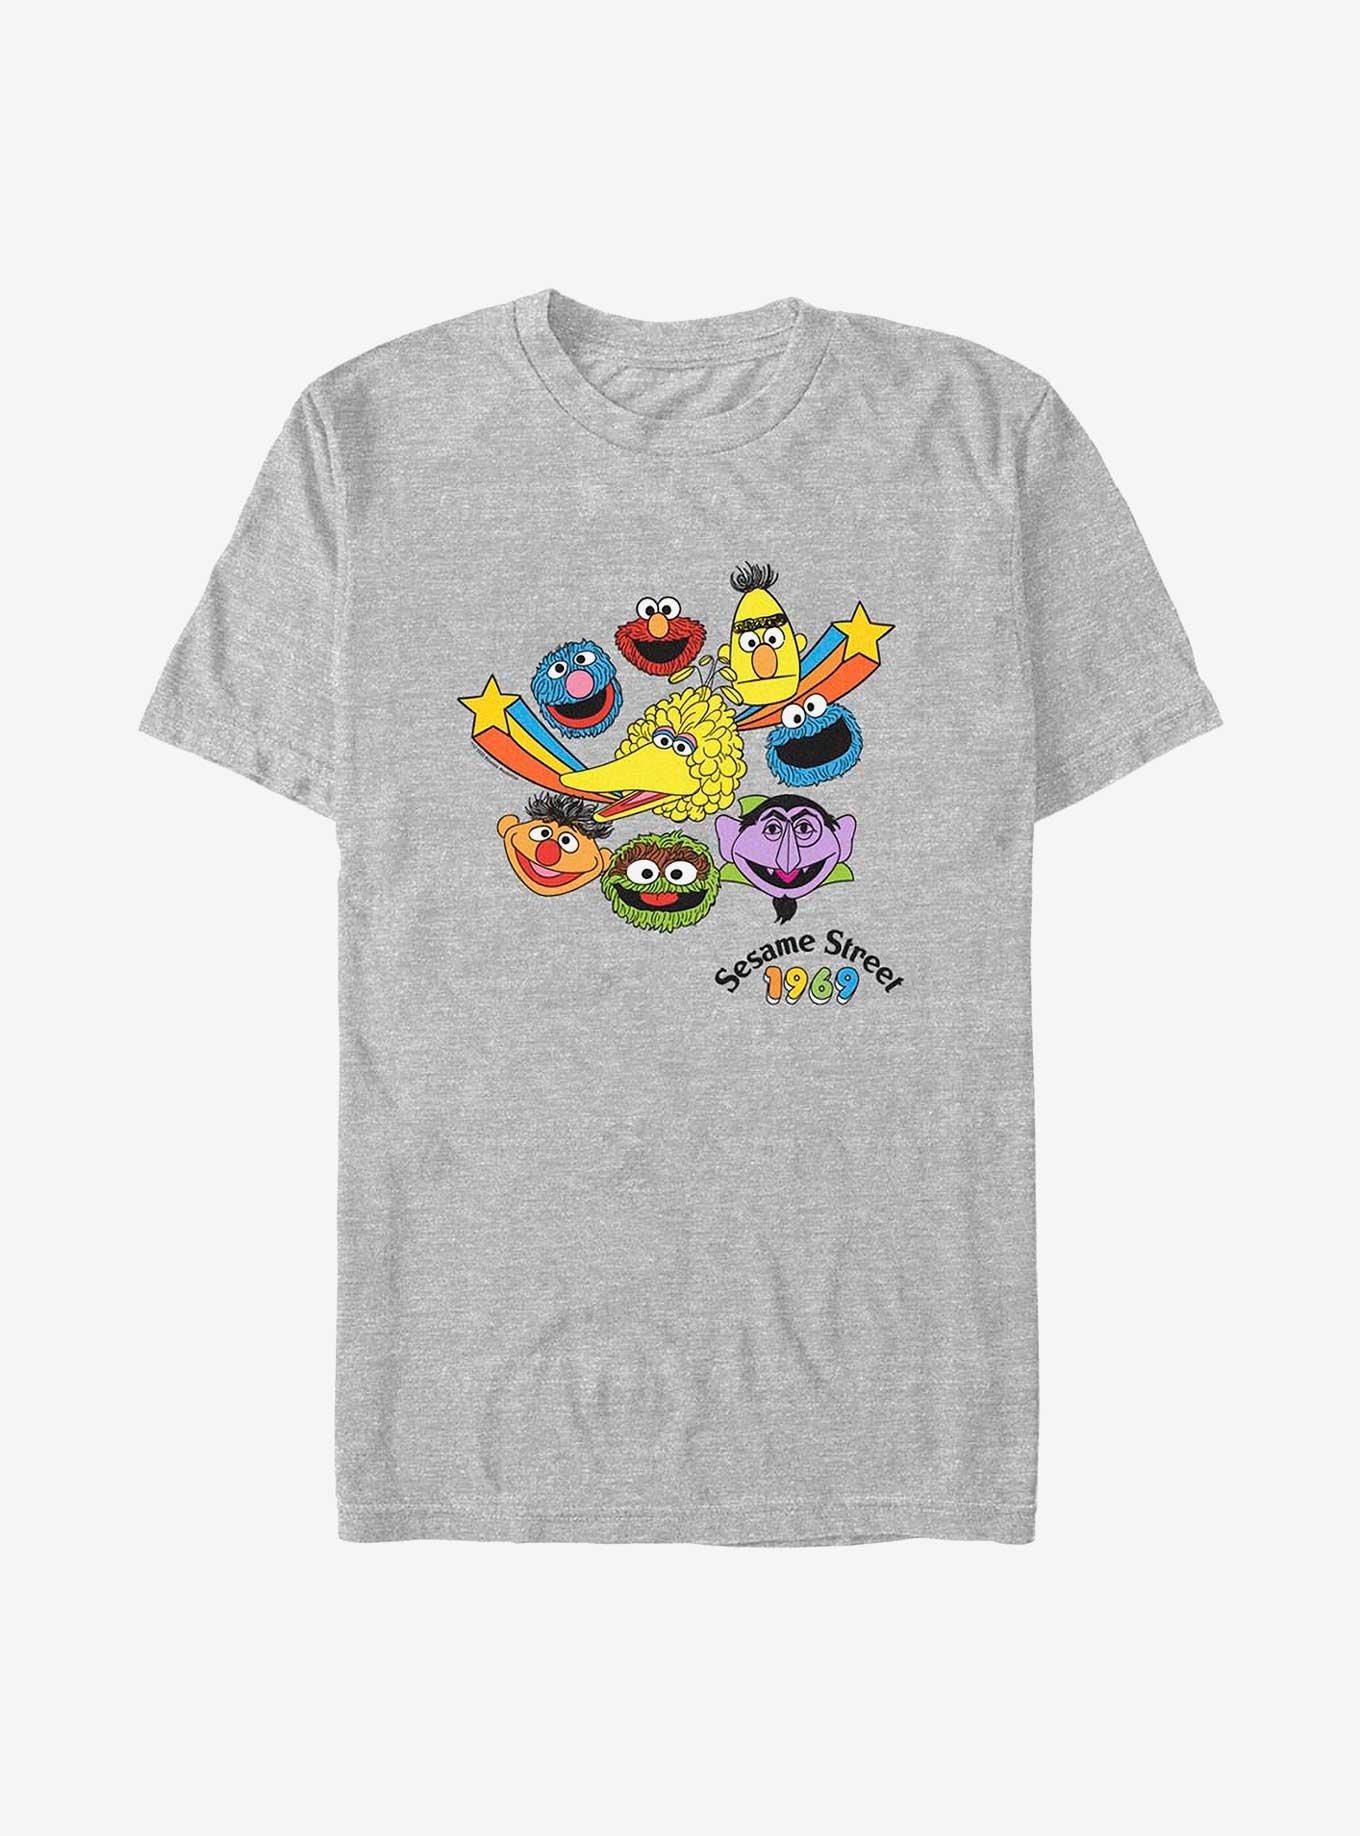 Sesame Street 1969 Heads T-Shirt